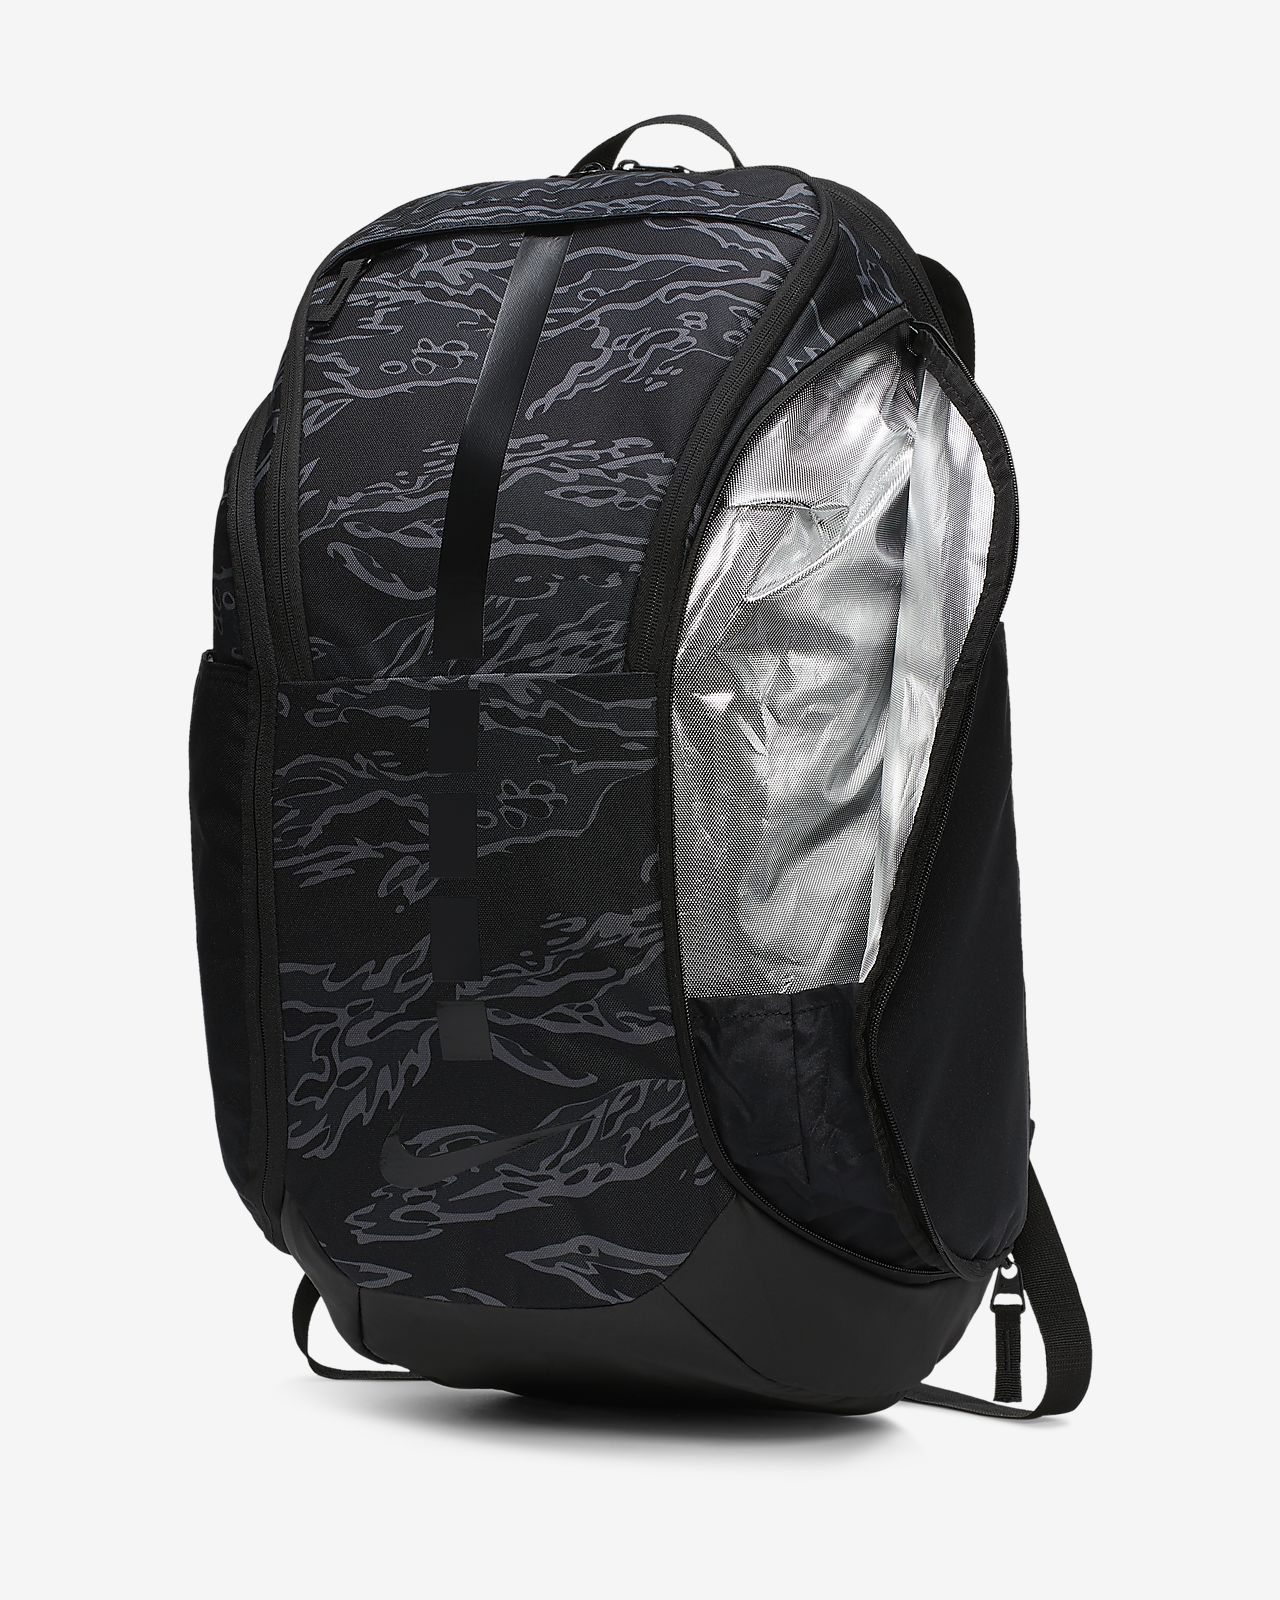 nike hoops elite pro backpack grey